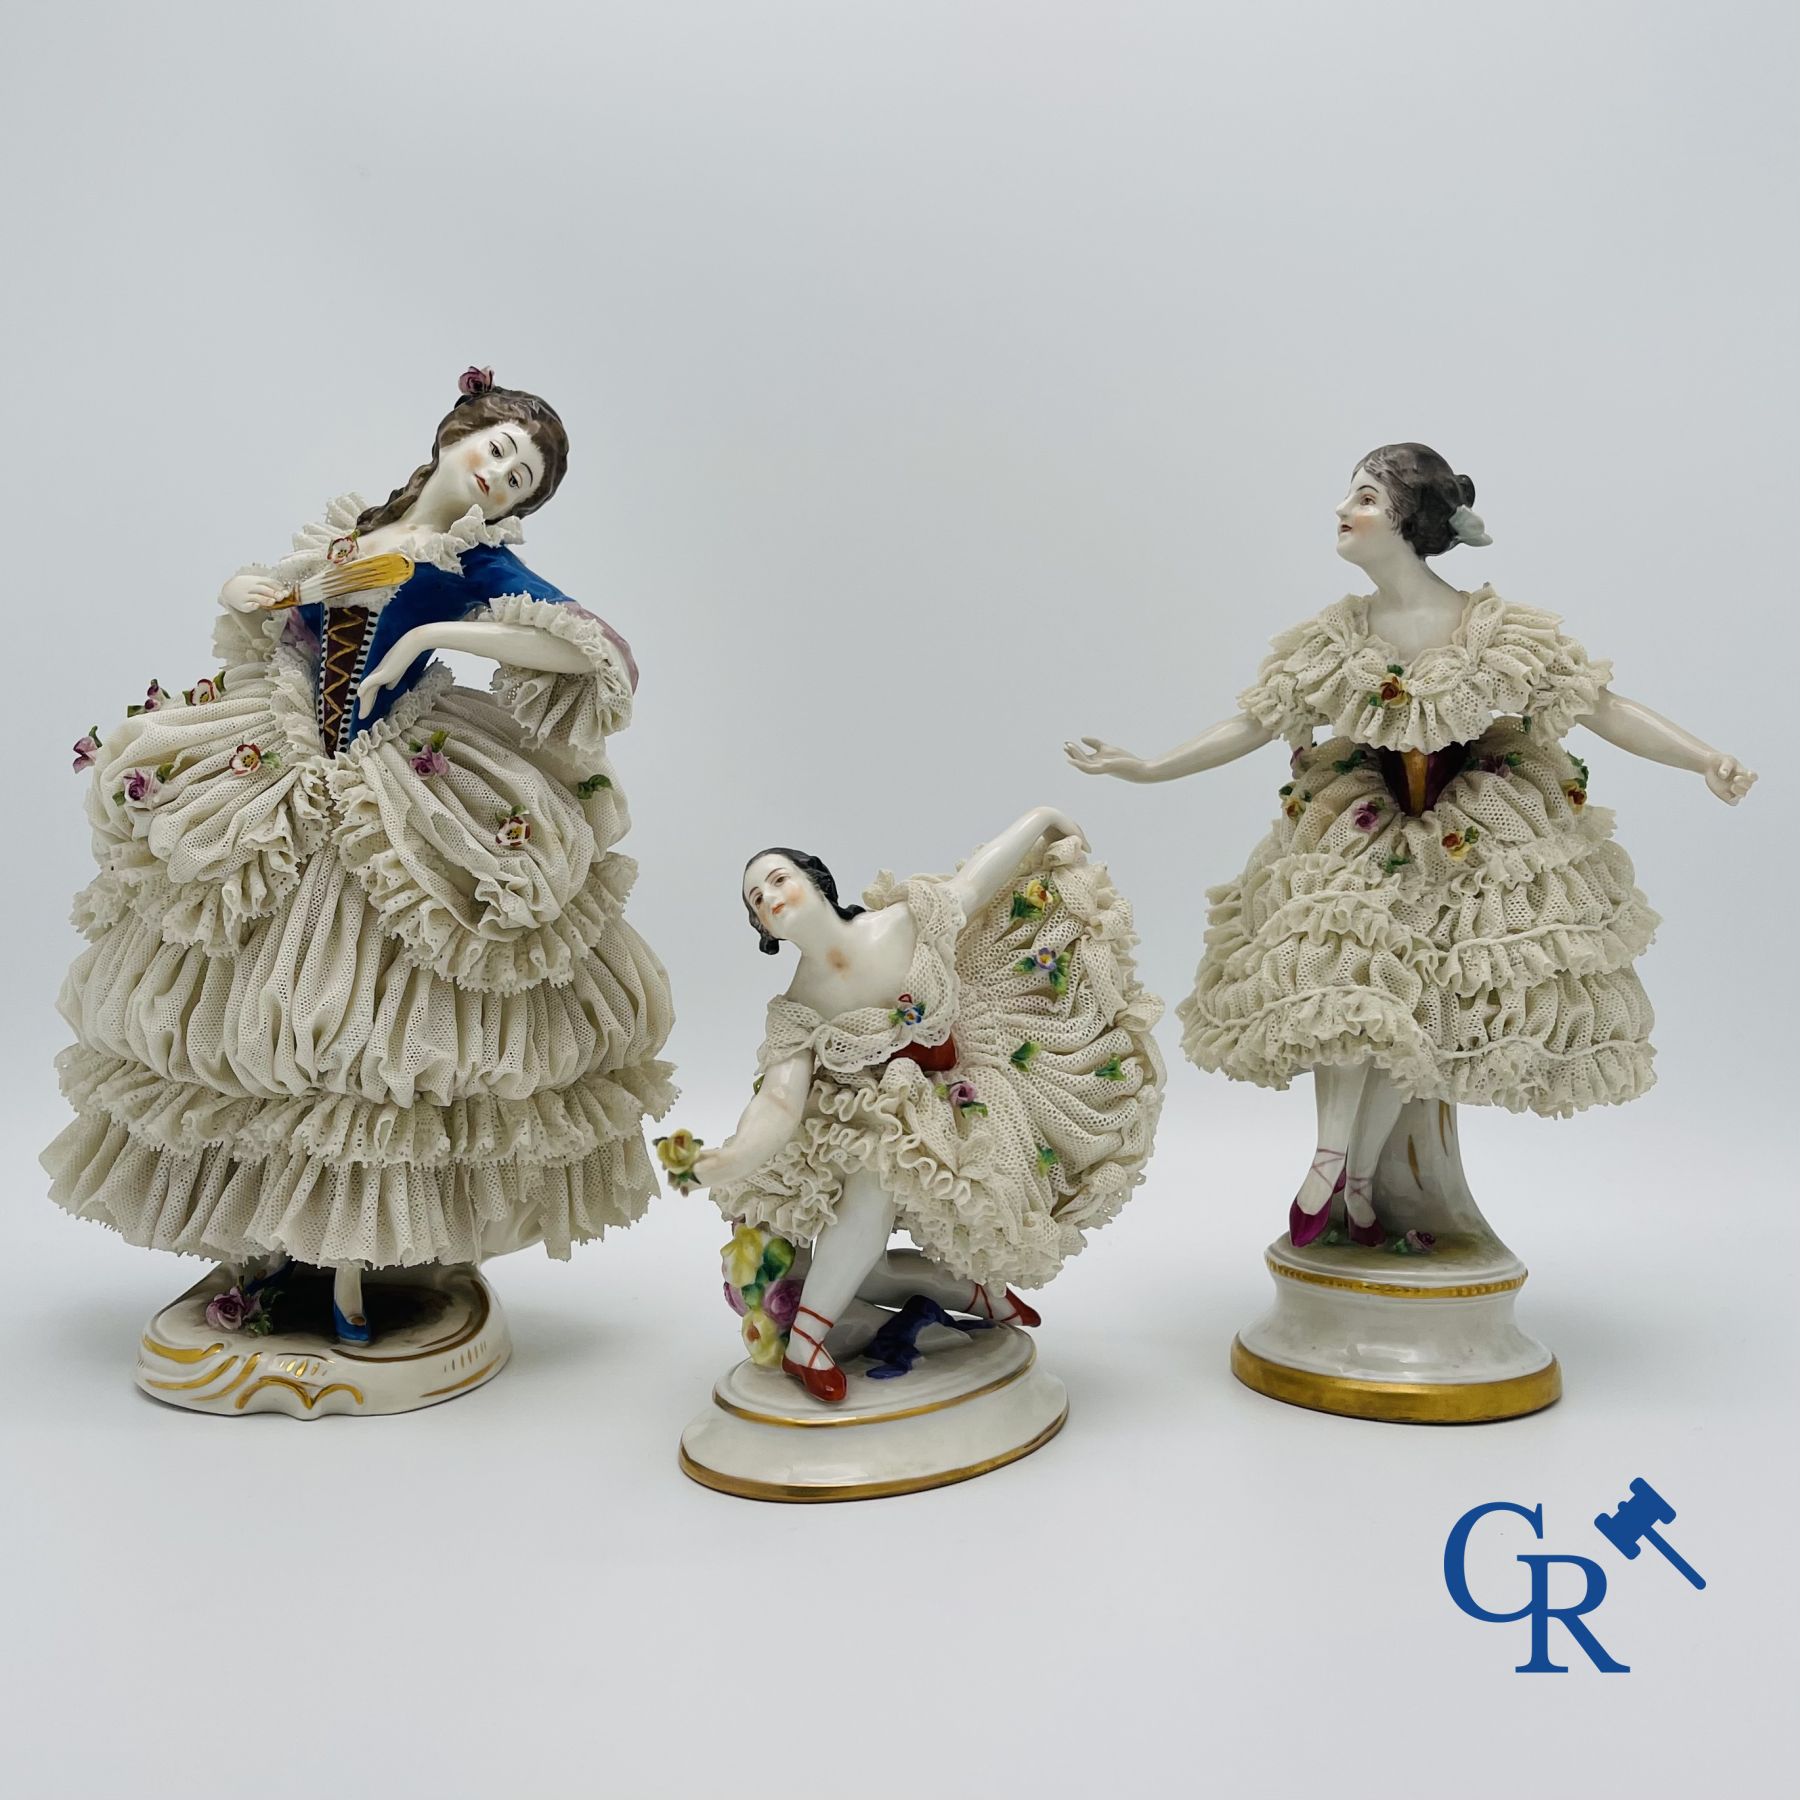 Volkstedt Rudolstadt: 3 dancers in fine porcelain, lace porcelain.